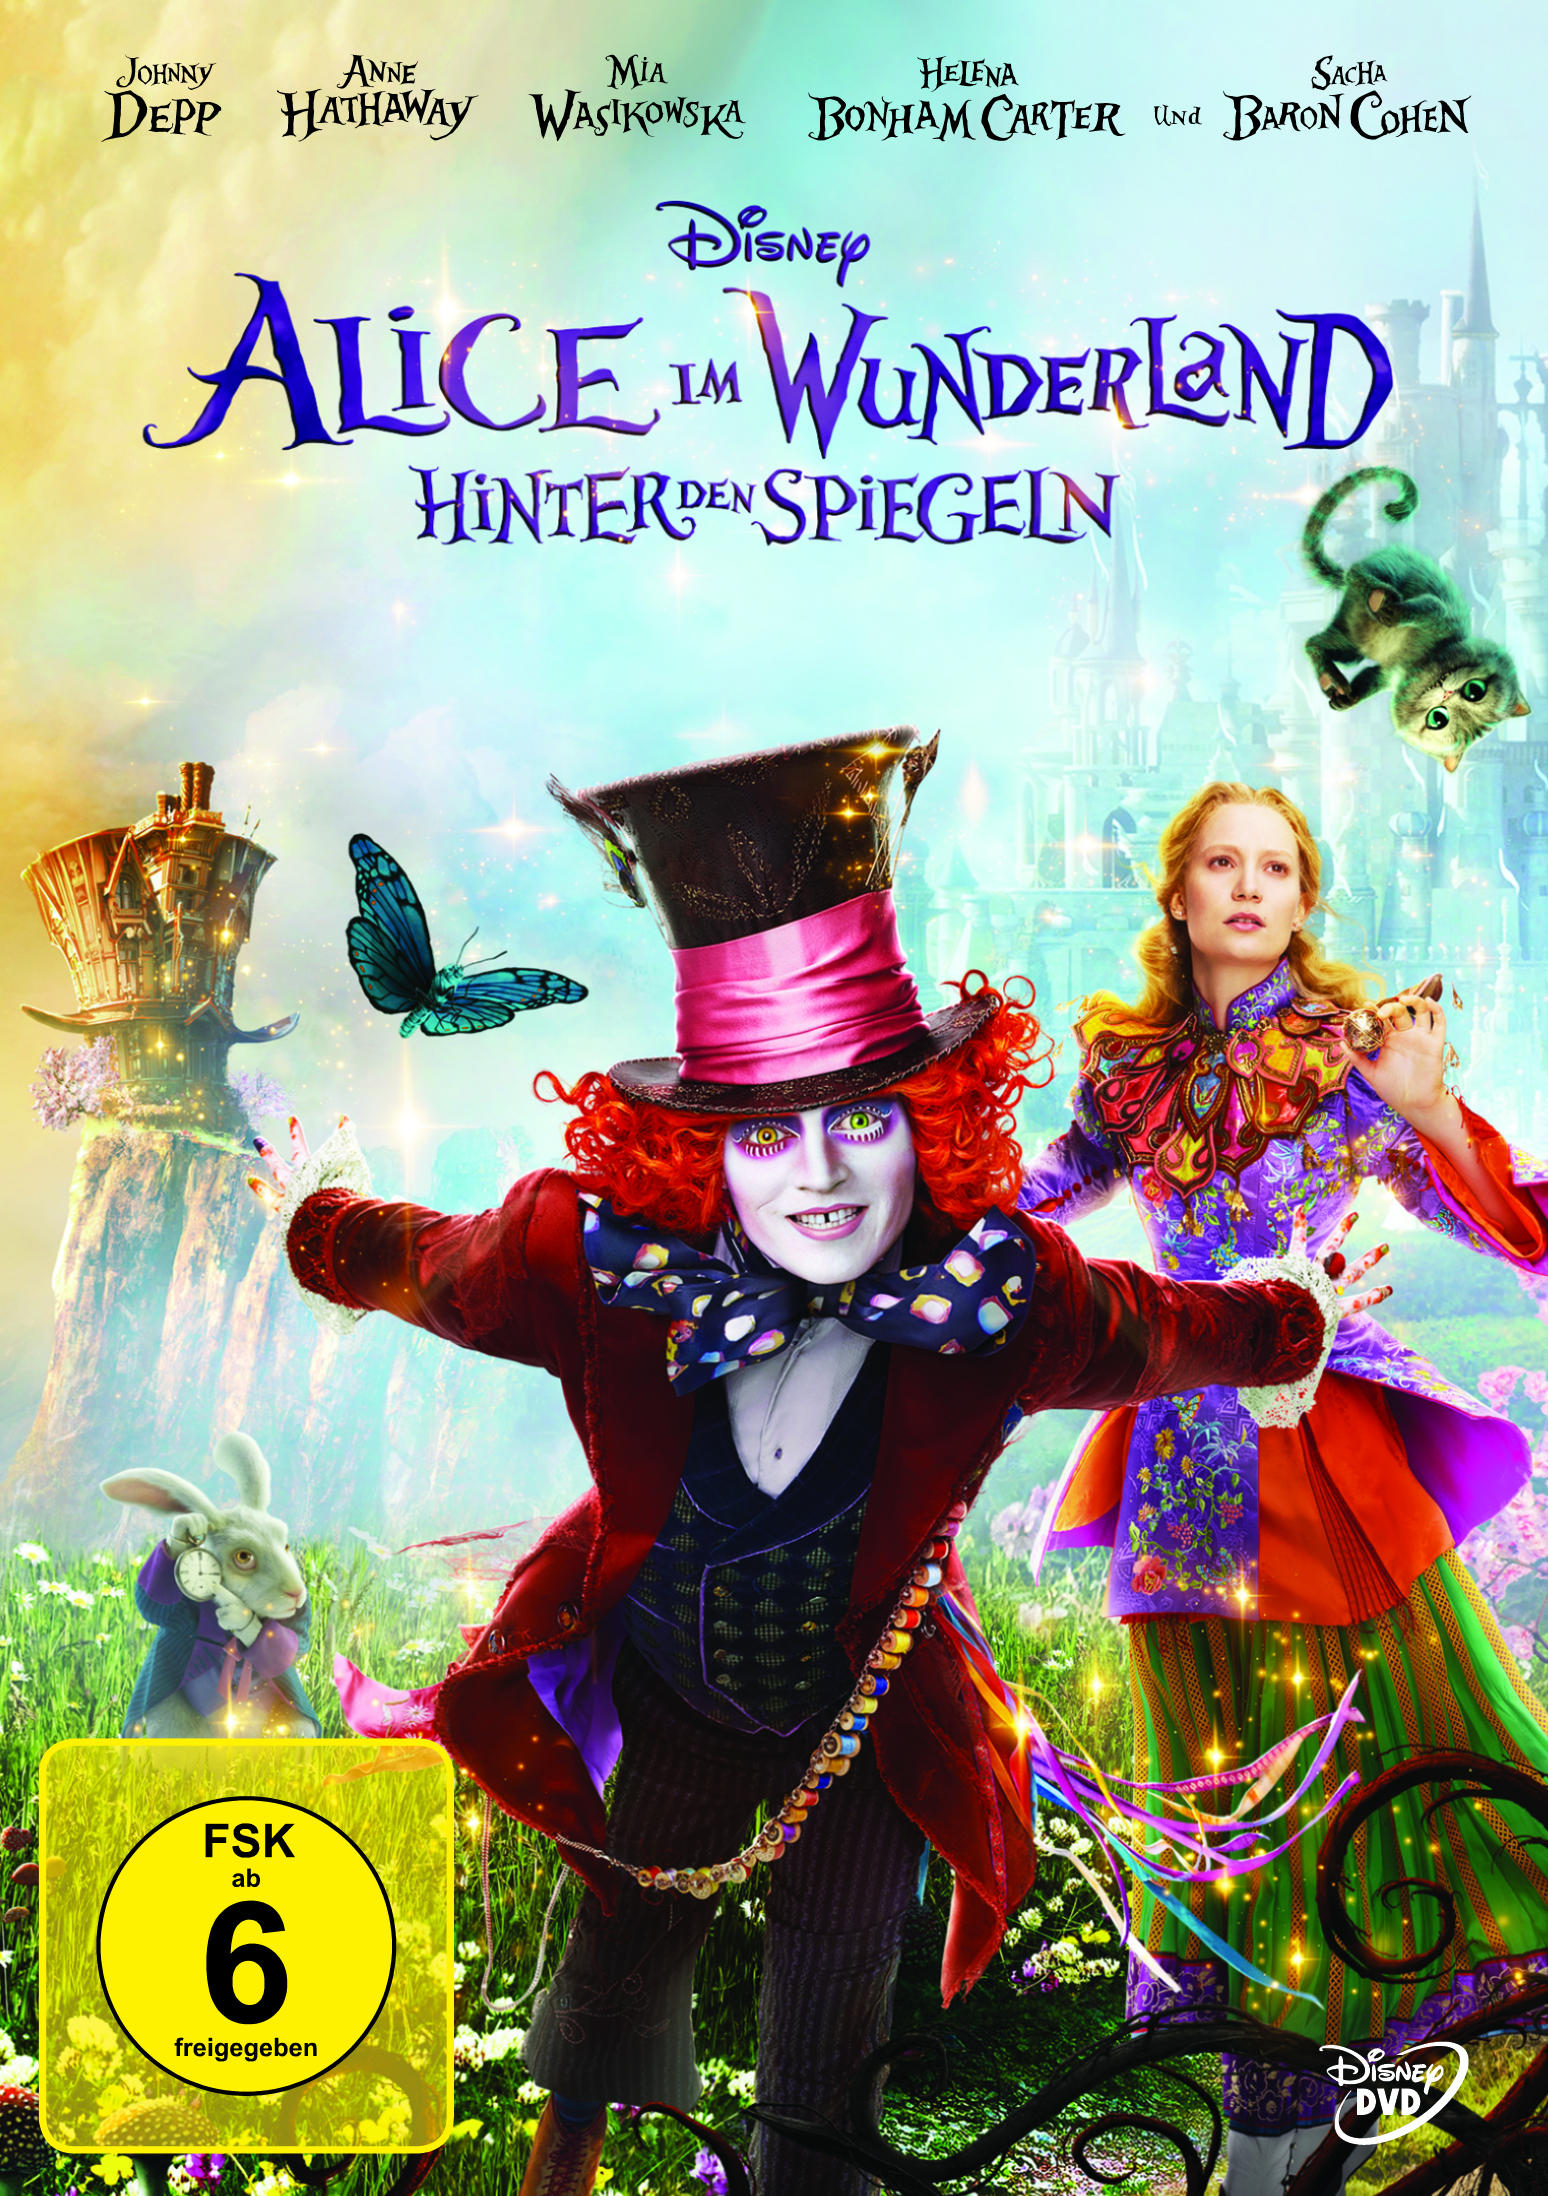 Alice im Hinter Spiegeln Wunderland: den DVD